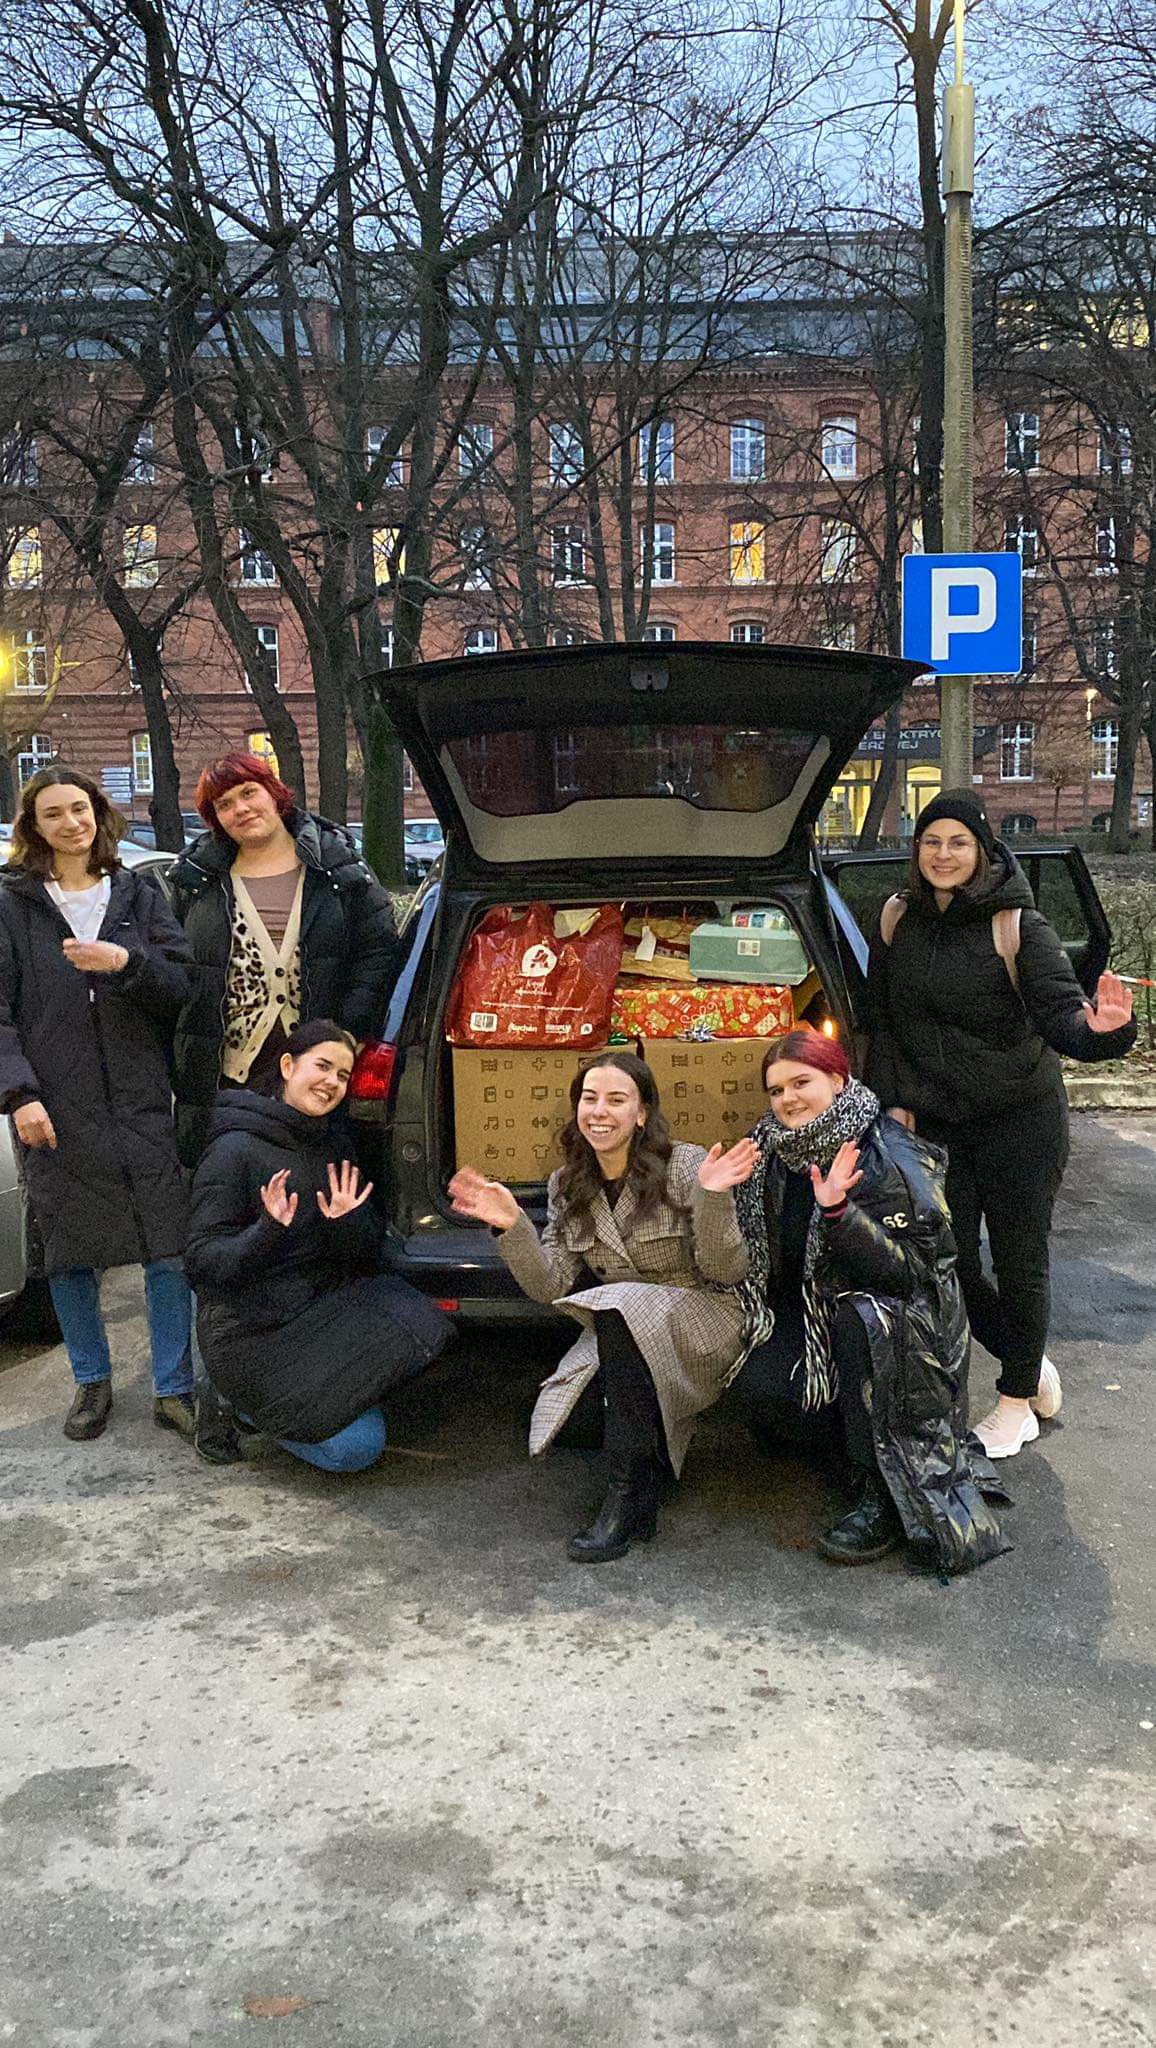 Grupa młodych ludzi pozuje do zdjęcia przy otwartym bagażniku samochodowym, który wypełniony jest prezentami